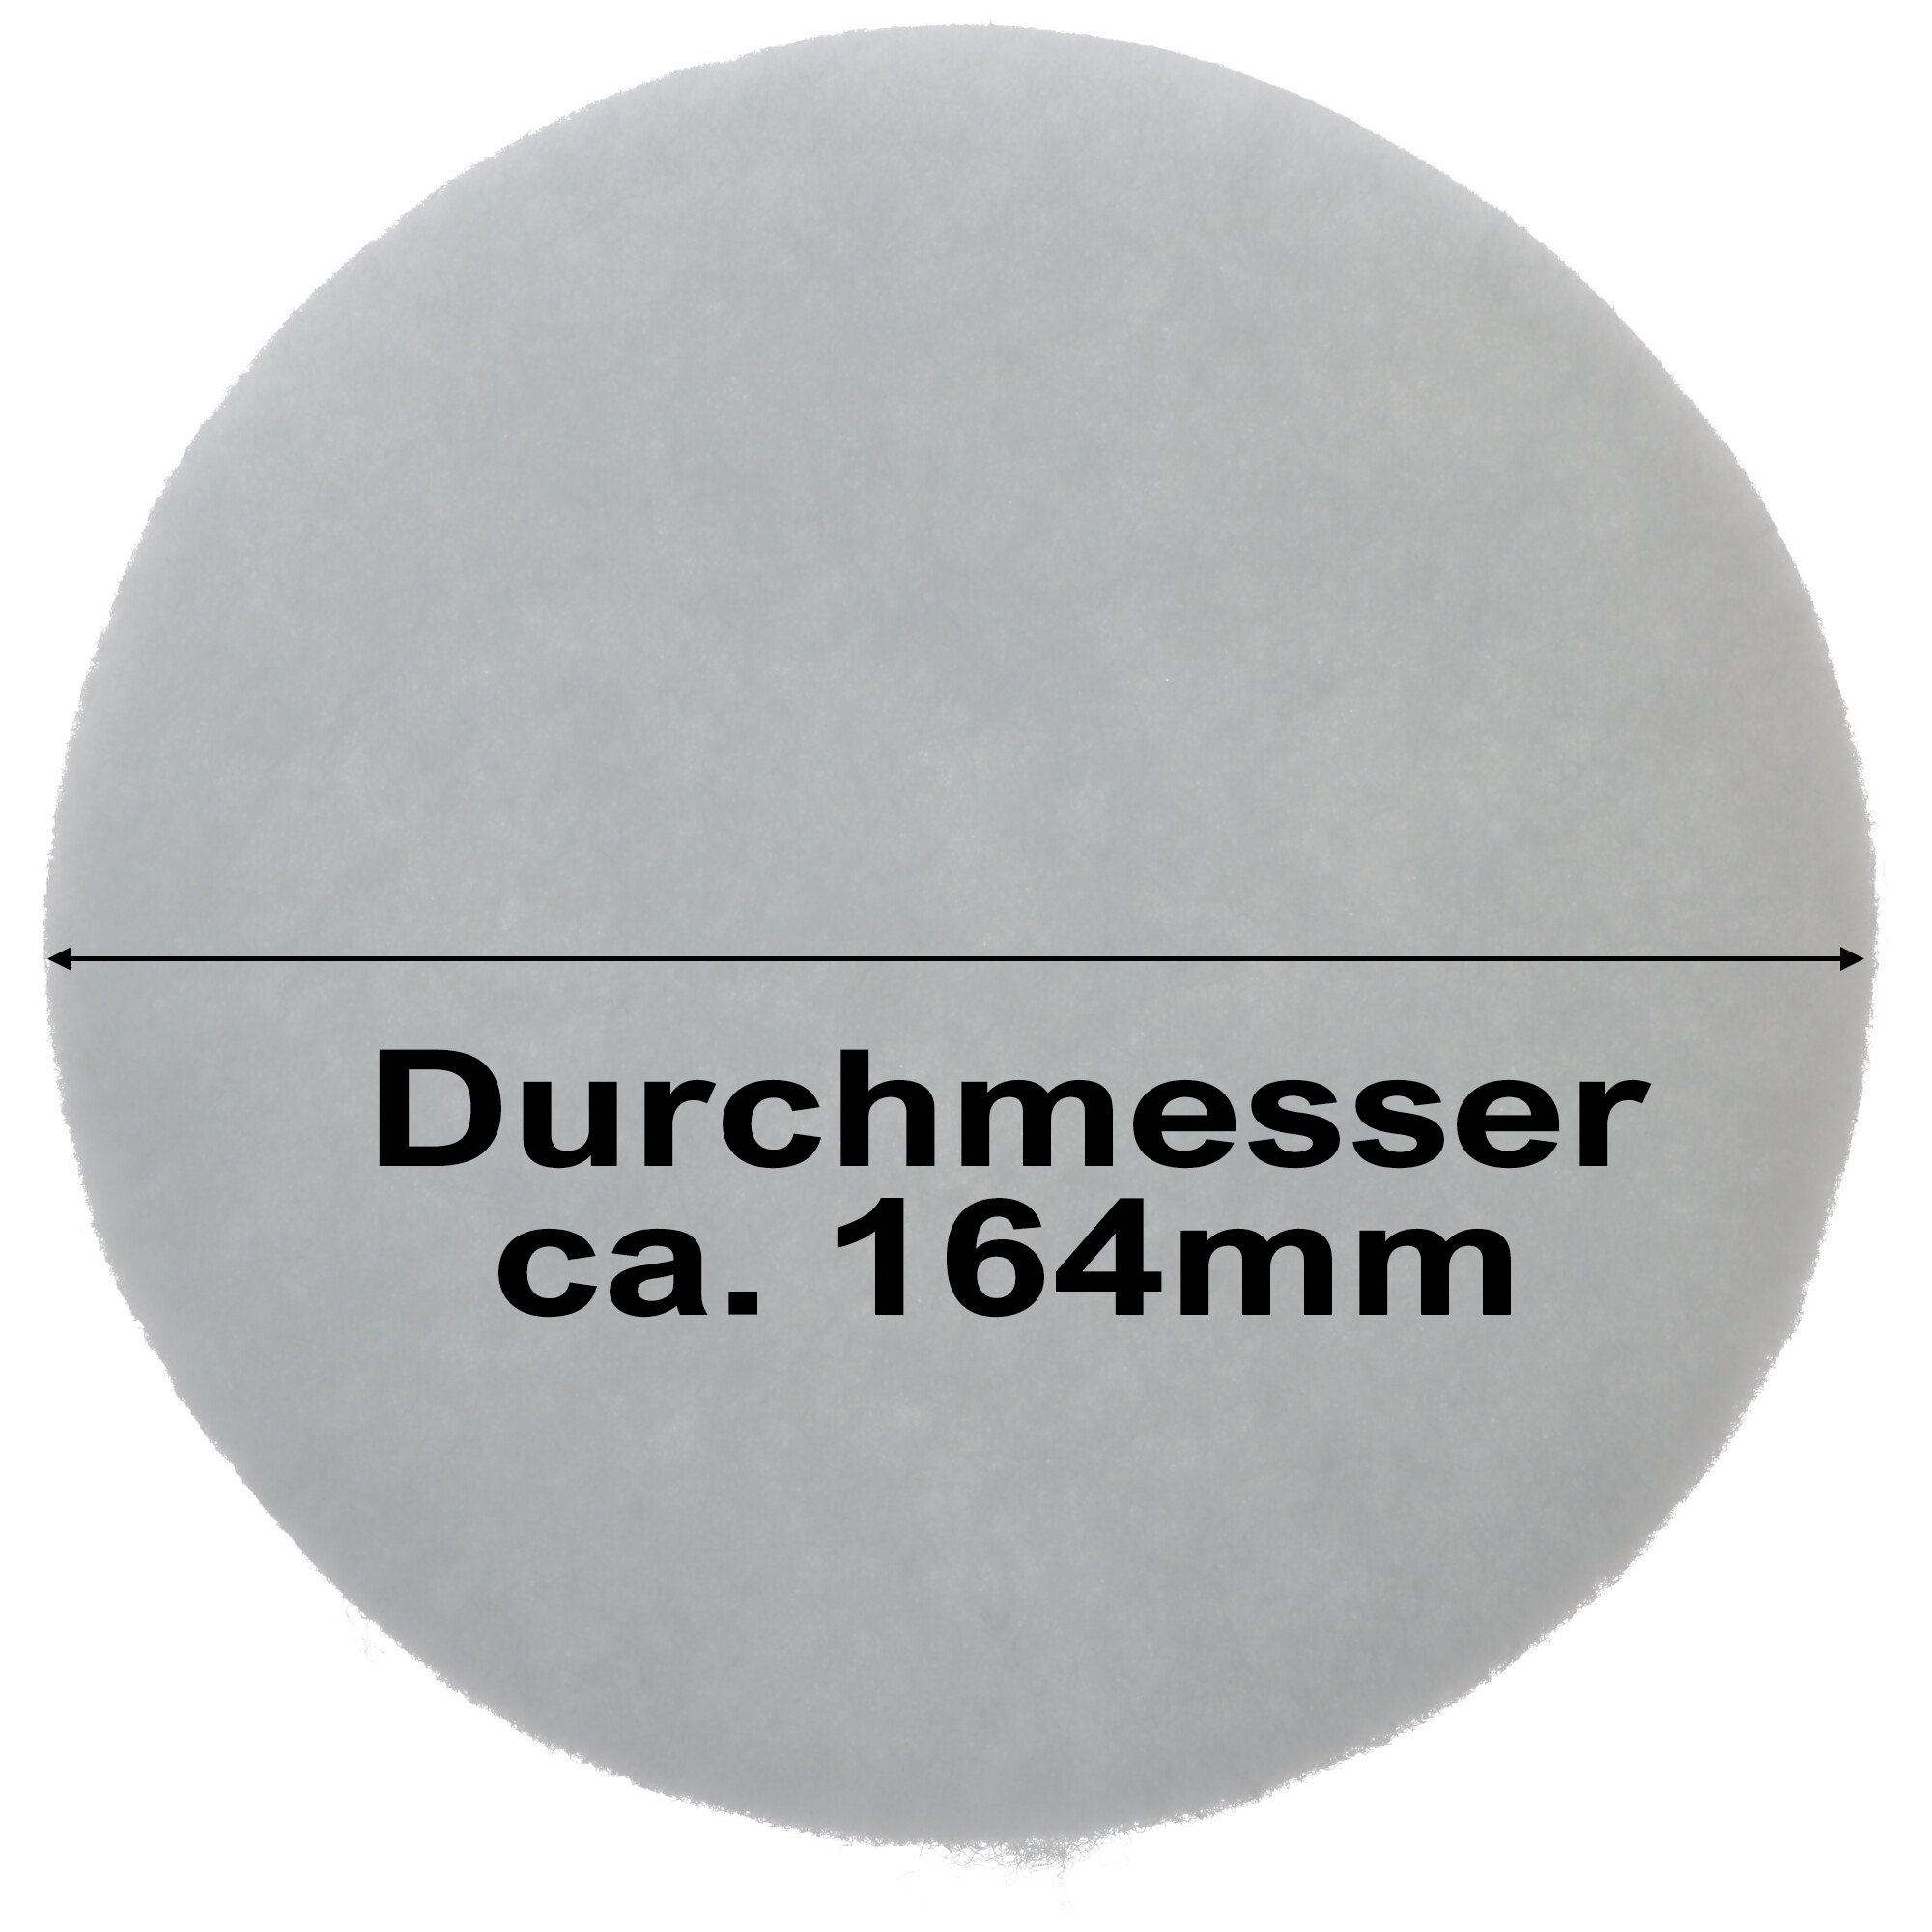 Staubsaugerfilter für Staubsauger wie Dyson 905401-01, Vormotor-Filter, 154mm / 164mm